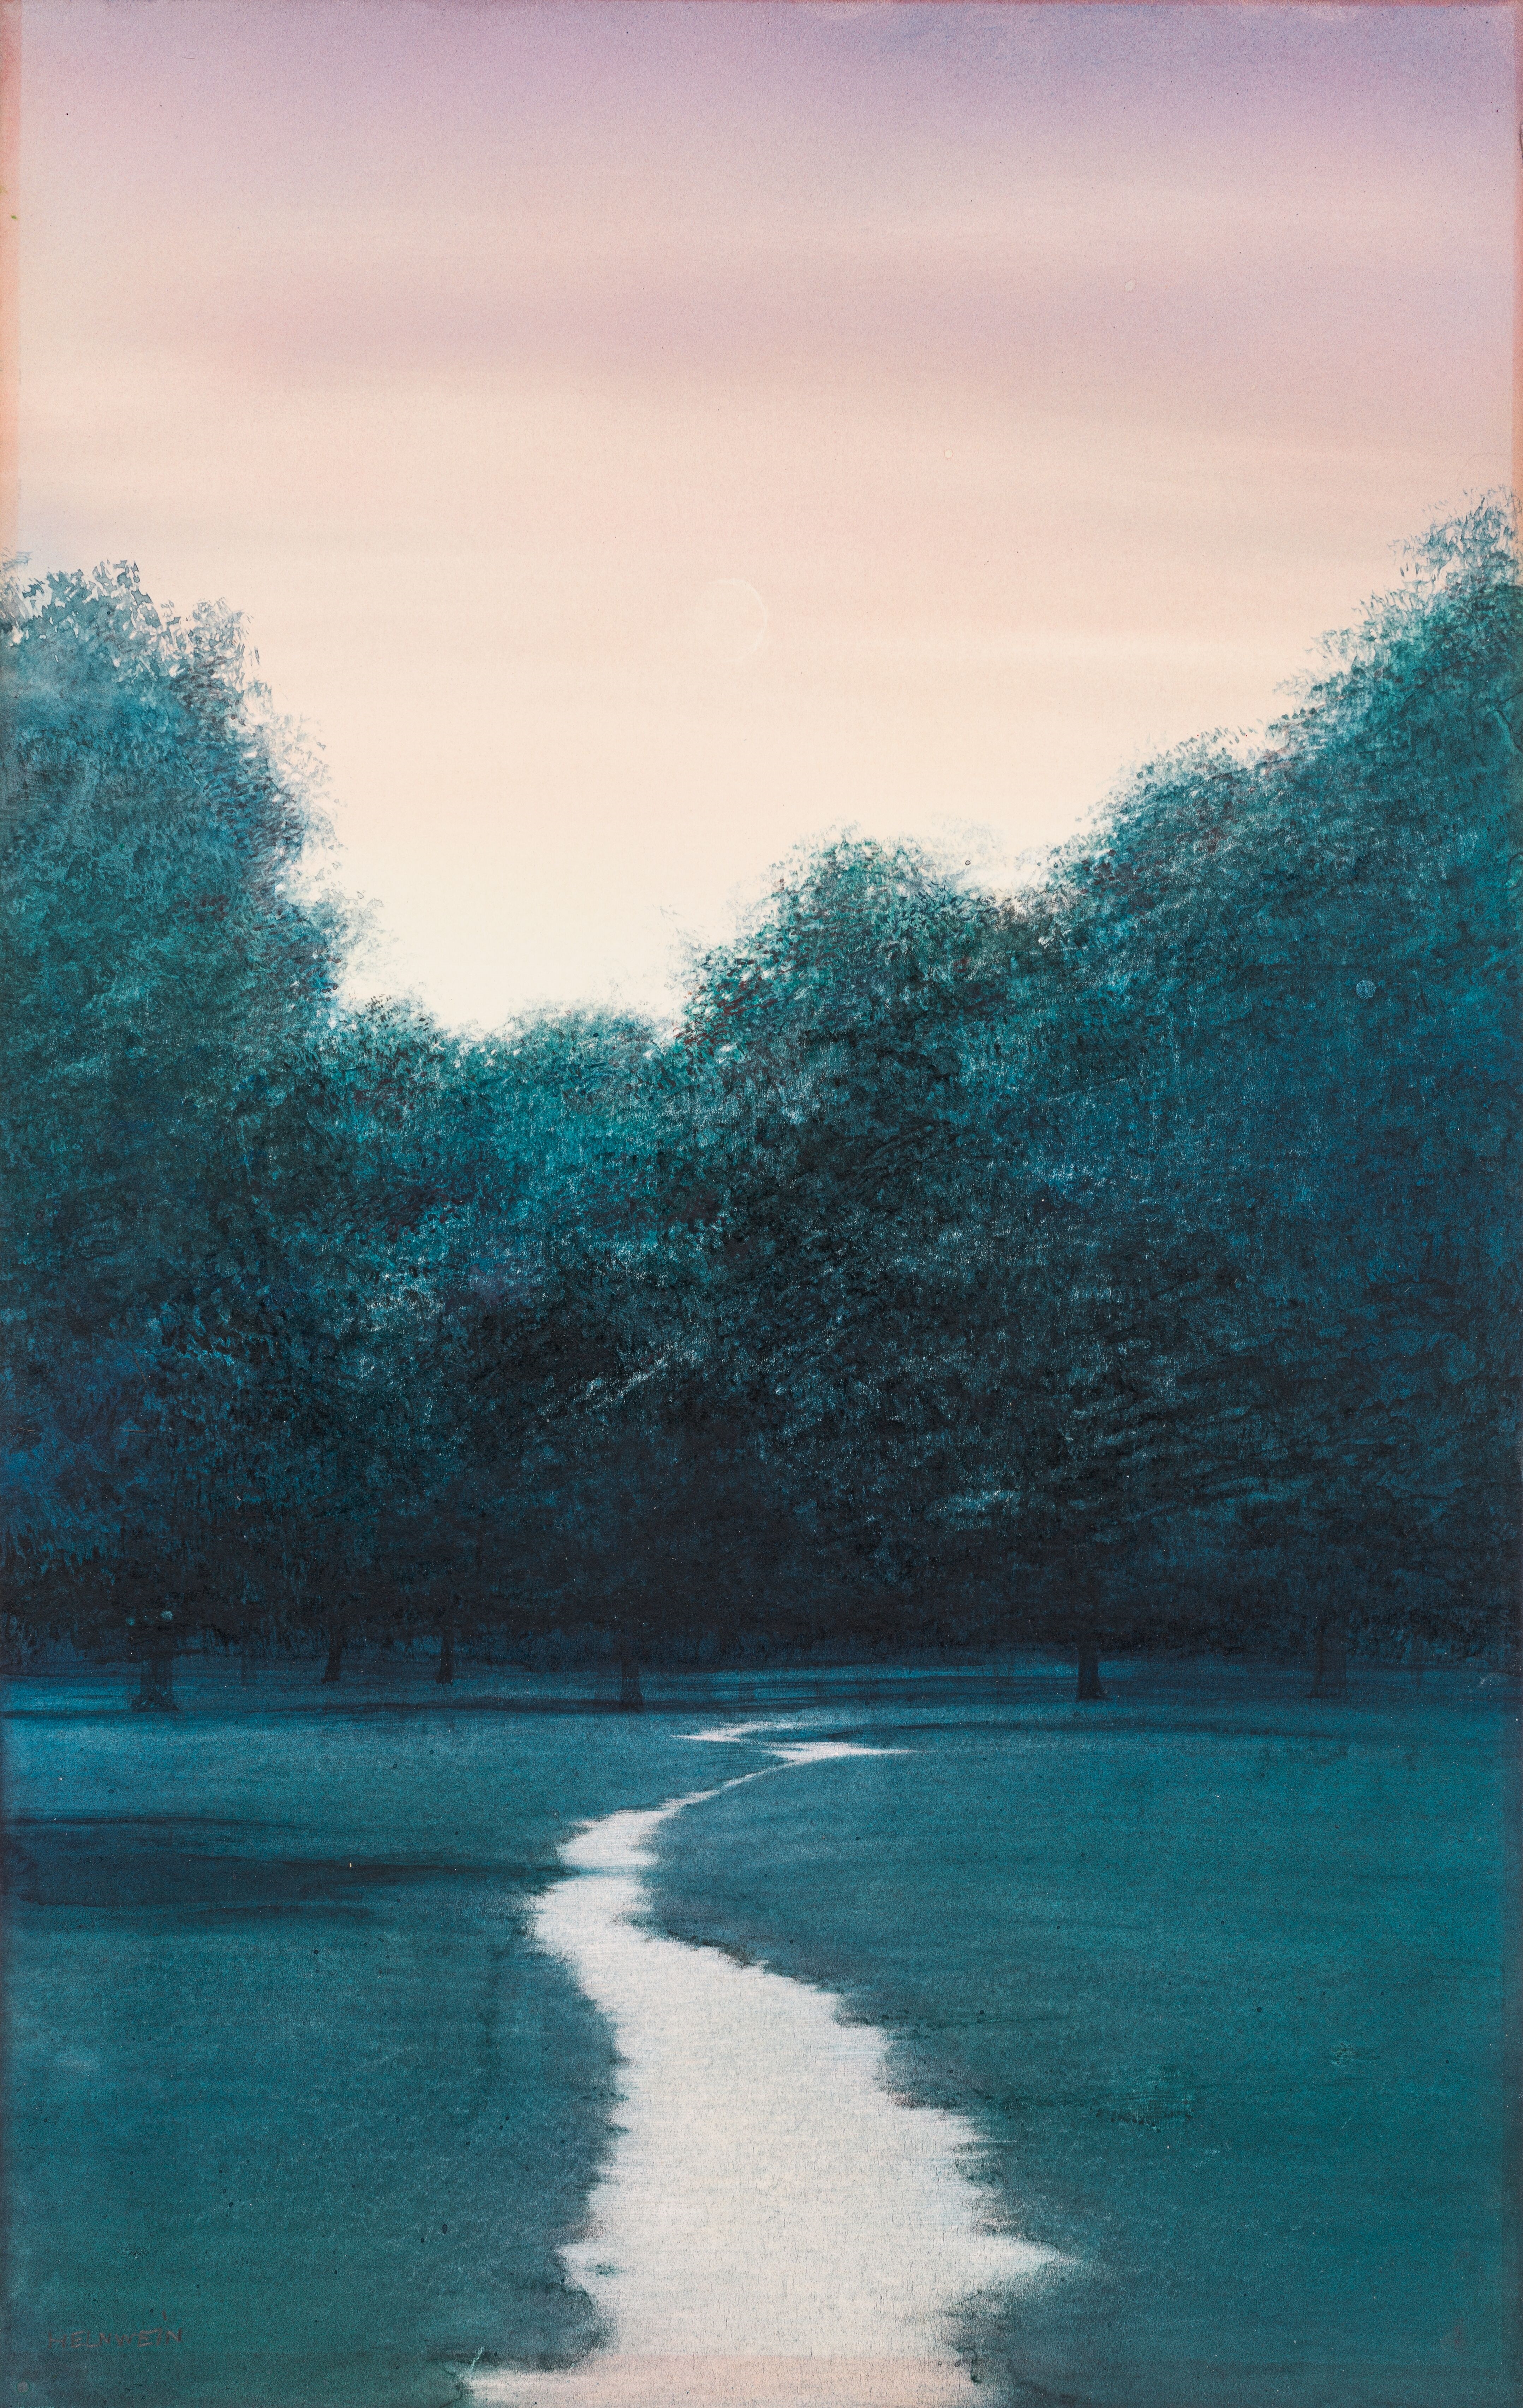 Untitled (landscape) by Gottfried Helnwein, 1980